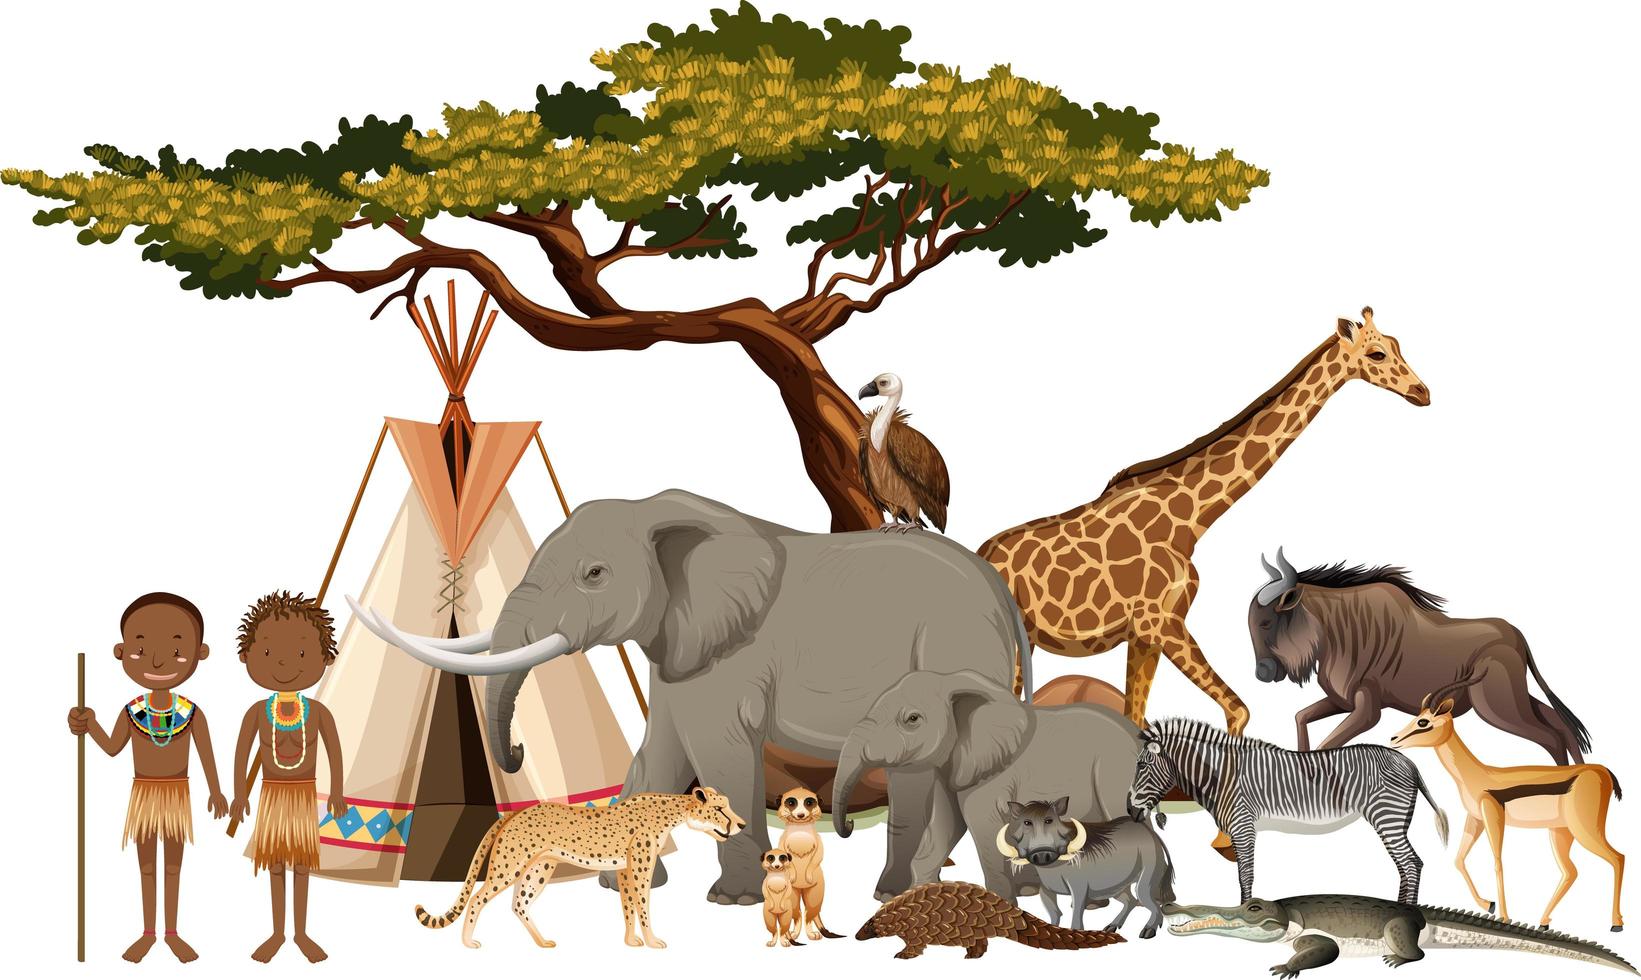 afrikansk stam med gruppen av vilda afrikanska djur på vit bakgrund vektor